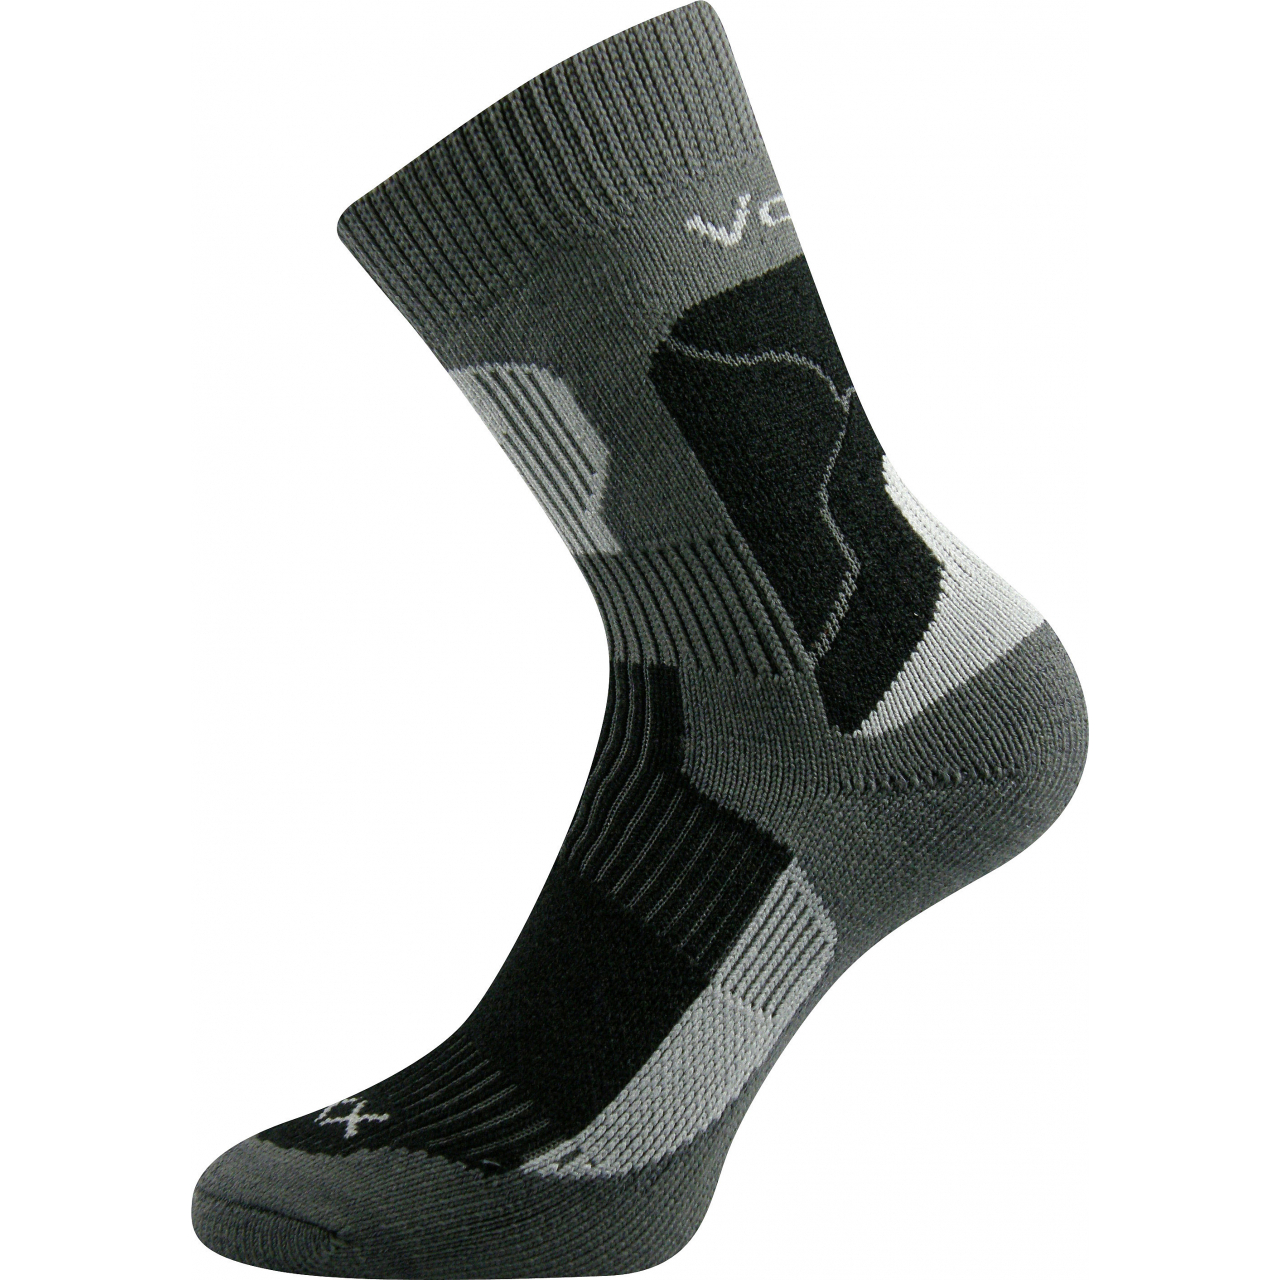 Ponožky unisex termo Voxx Treking - tmavě šedé-černé, 41-42